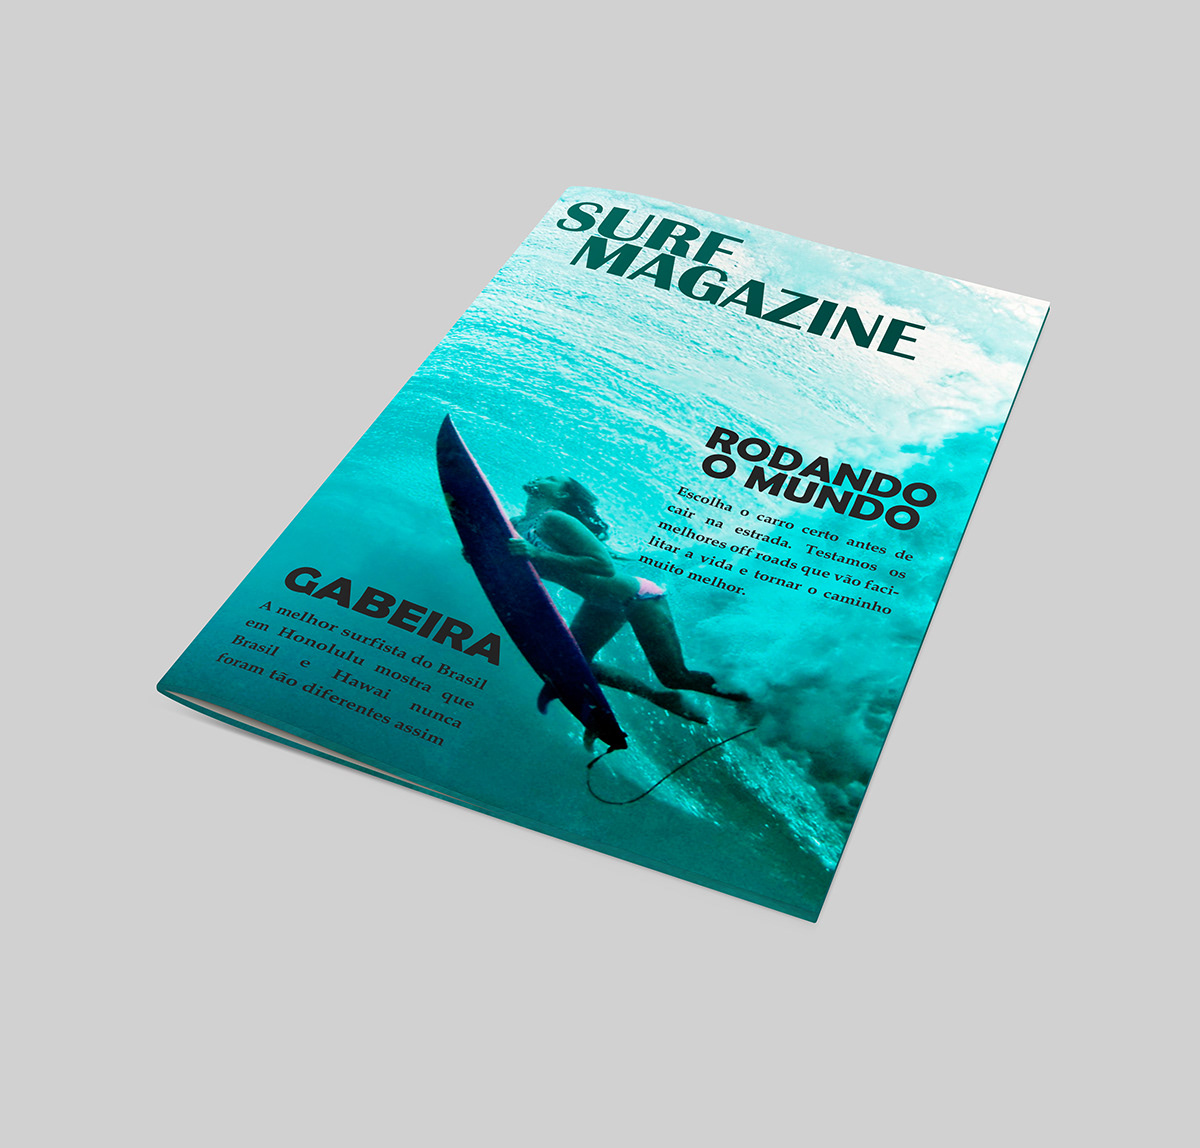 magazine Surf